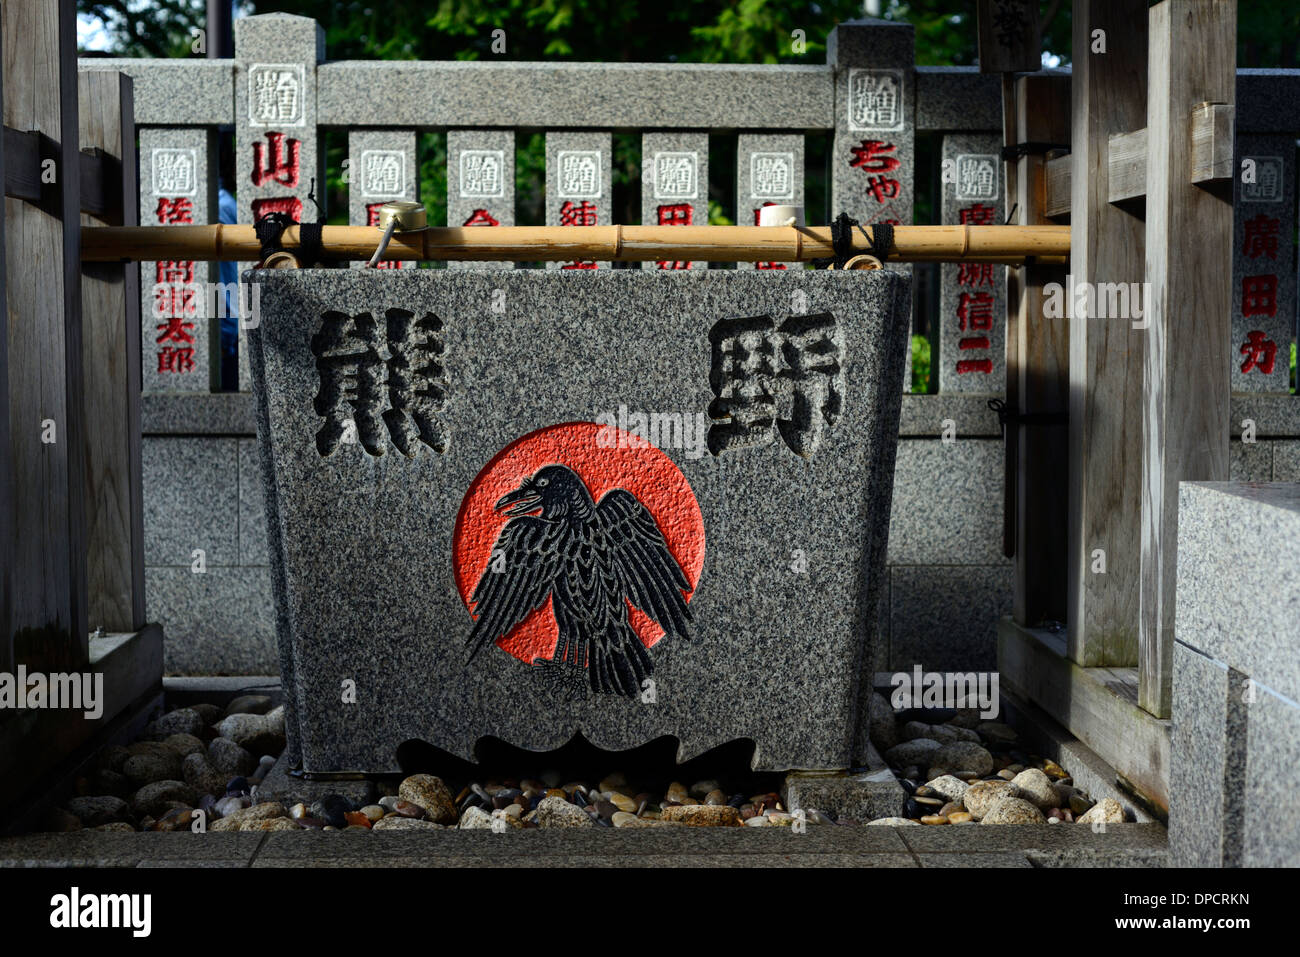 Rouge et noir symbole symbolisme bouddhiste temple zozoji crow Tokyo Japon culture japonaise chōzuya temizuya bassin rempli d'eau Banque D'Images